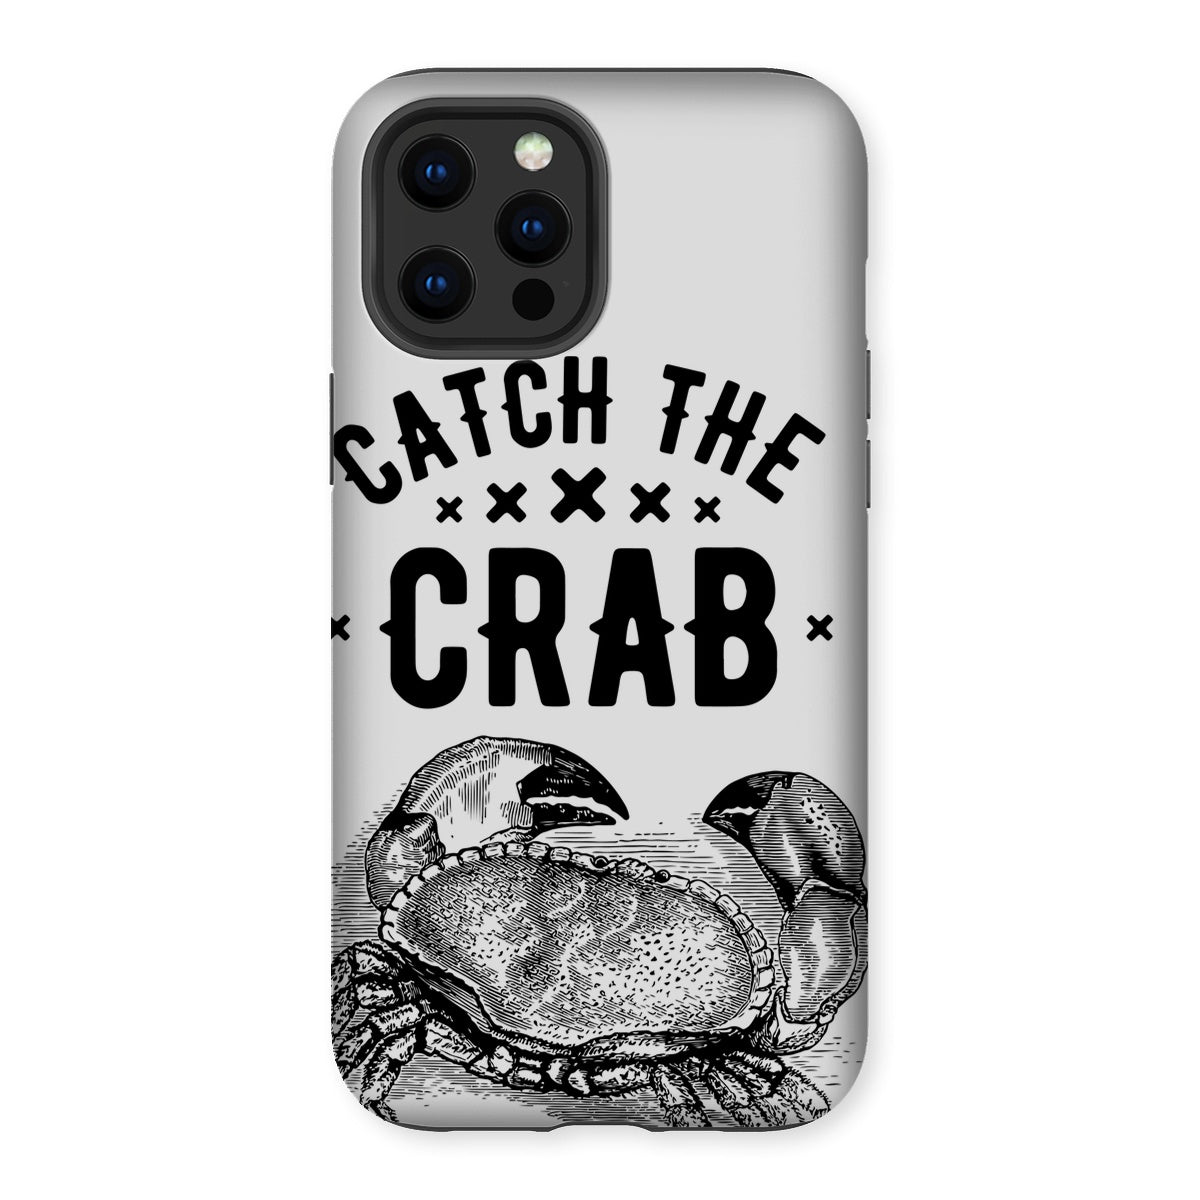 AQUA B&W - 07 - Catch the crab - Tough Phone Case